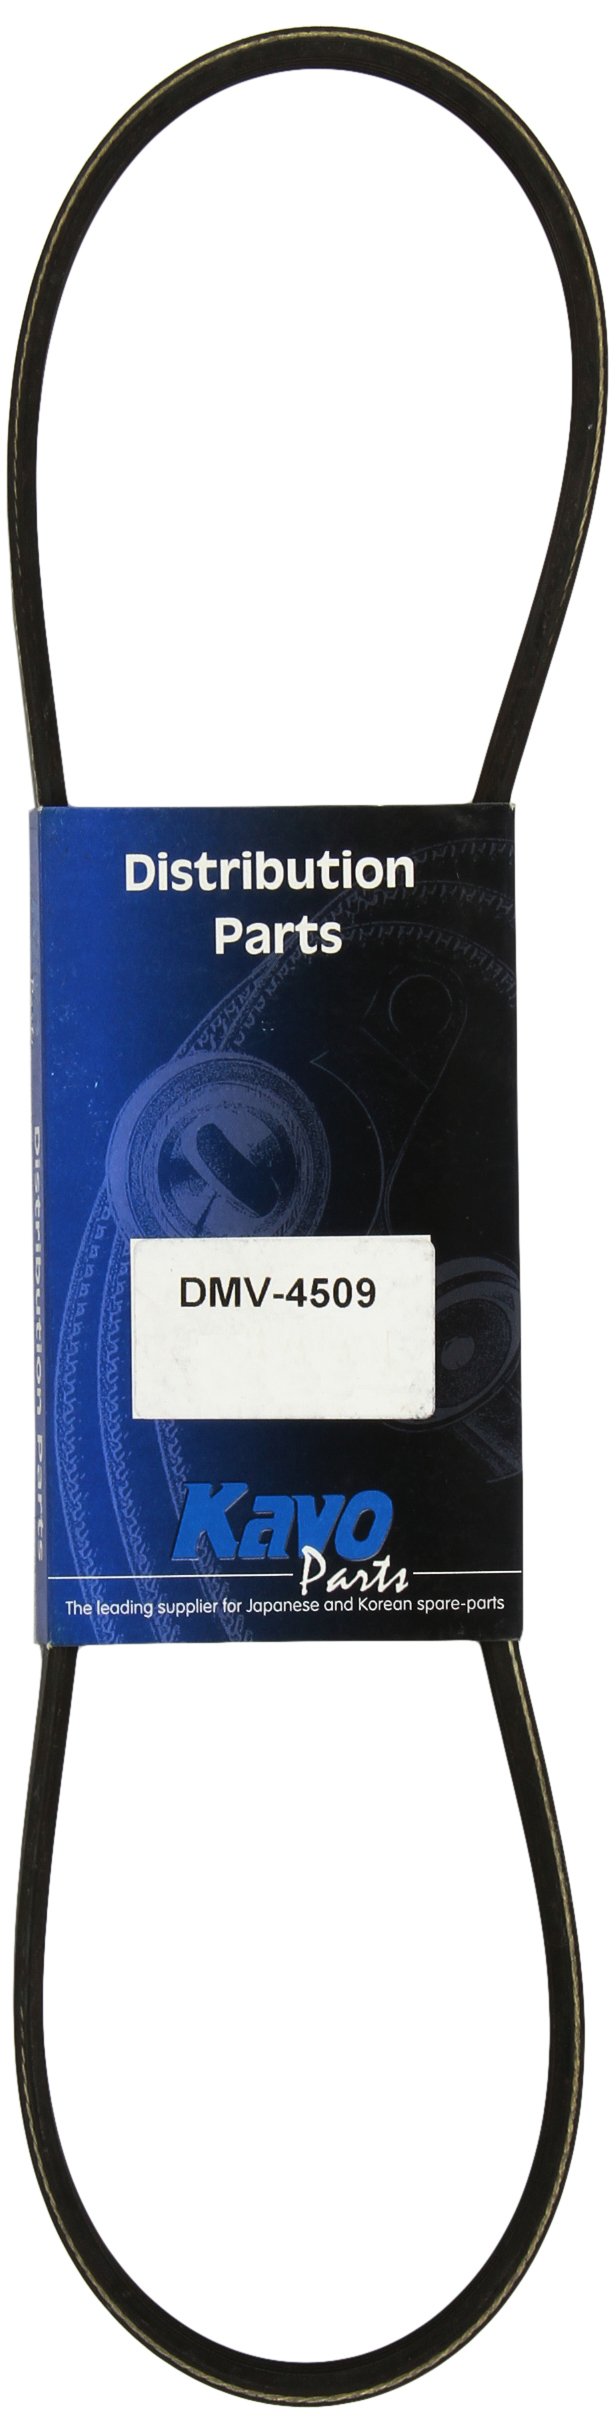 Kavo Parts DMV-4509 Keilrippenriem von Kavo Parts